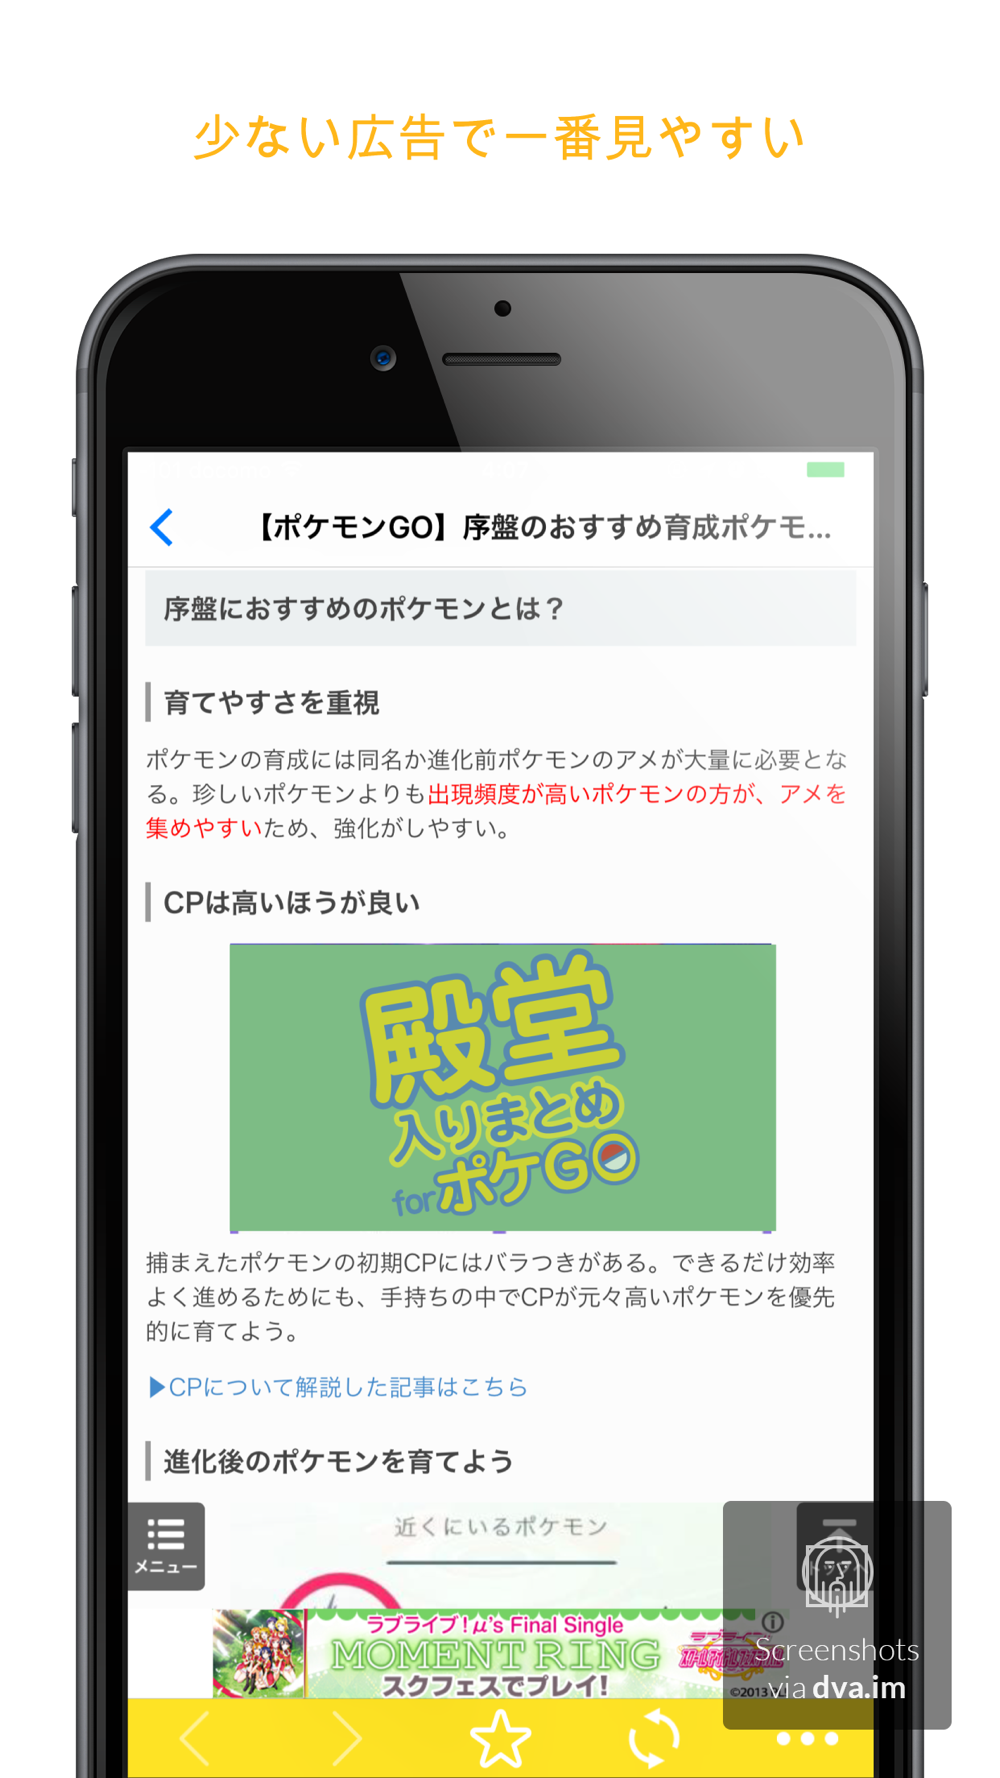 殿堂入り攻略まとめ For ポケモンgo Pokemon Go Free Download App For Iphone Steprimo Com